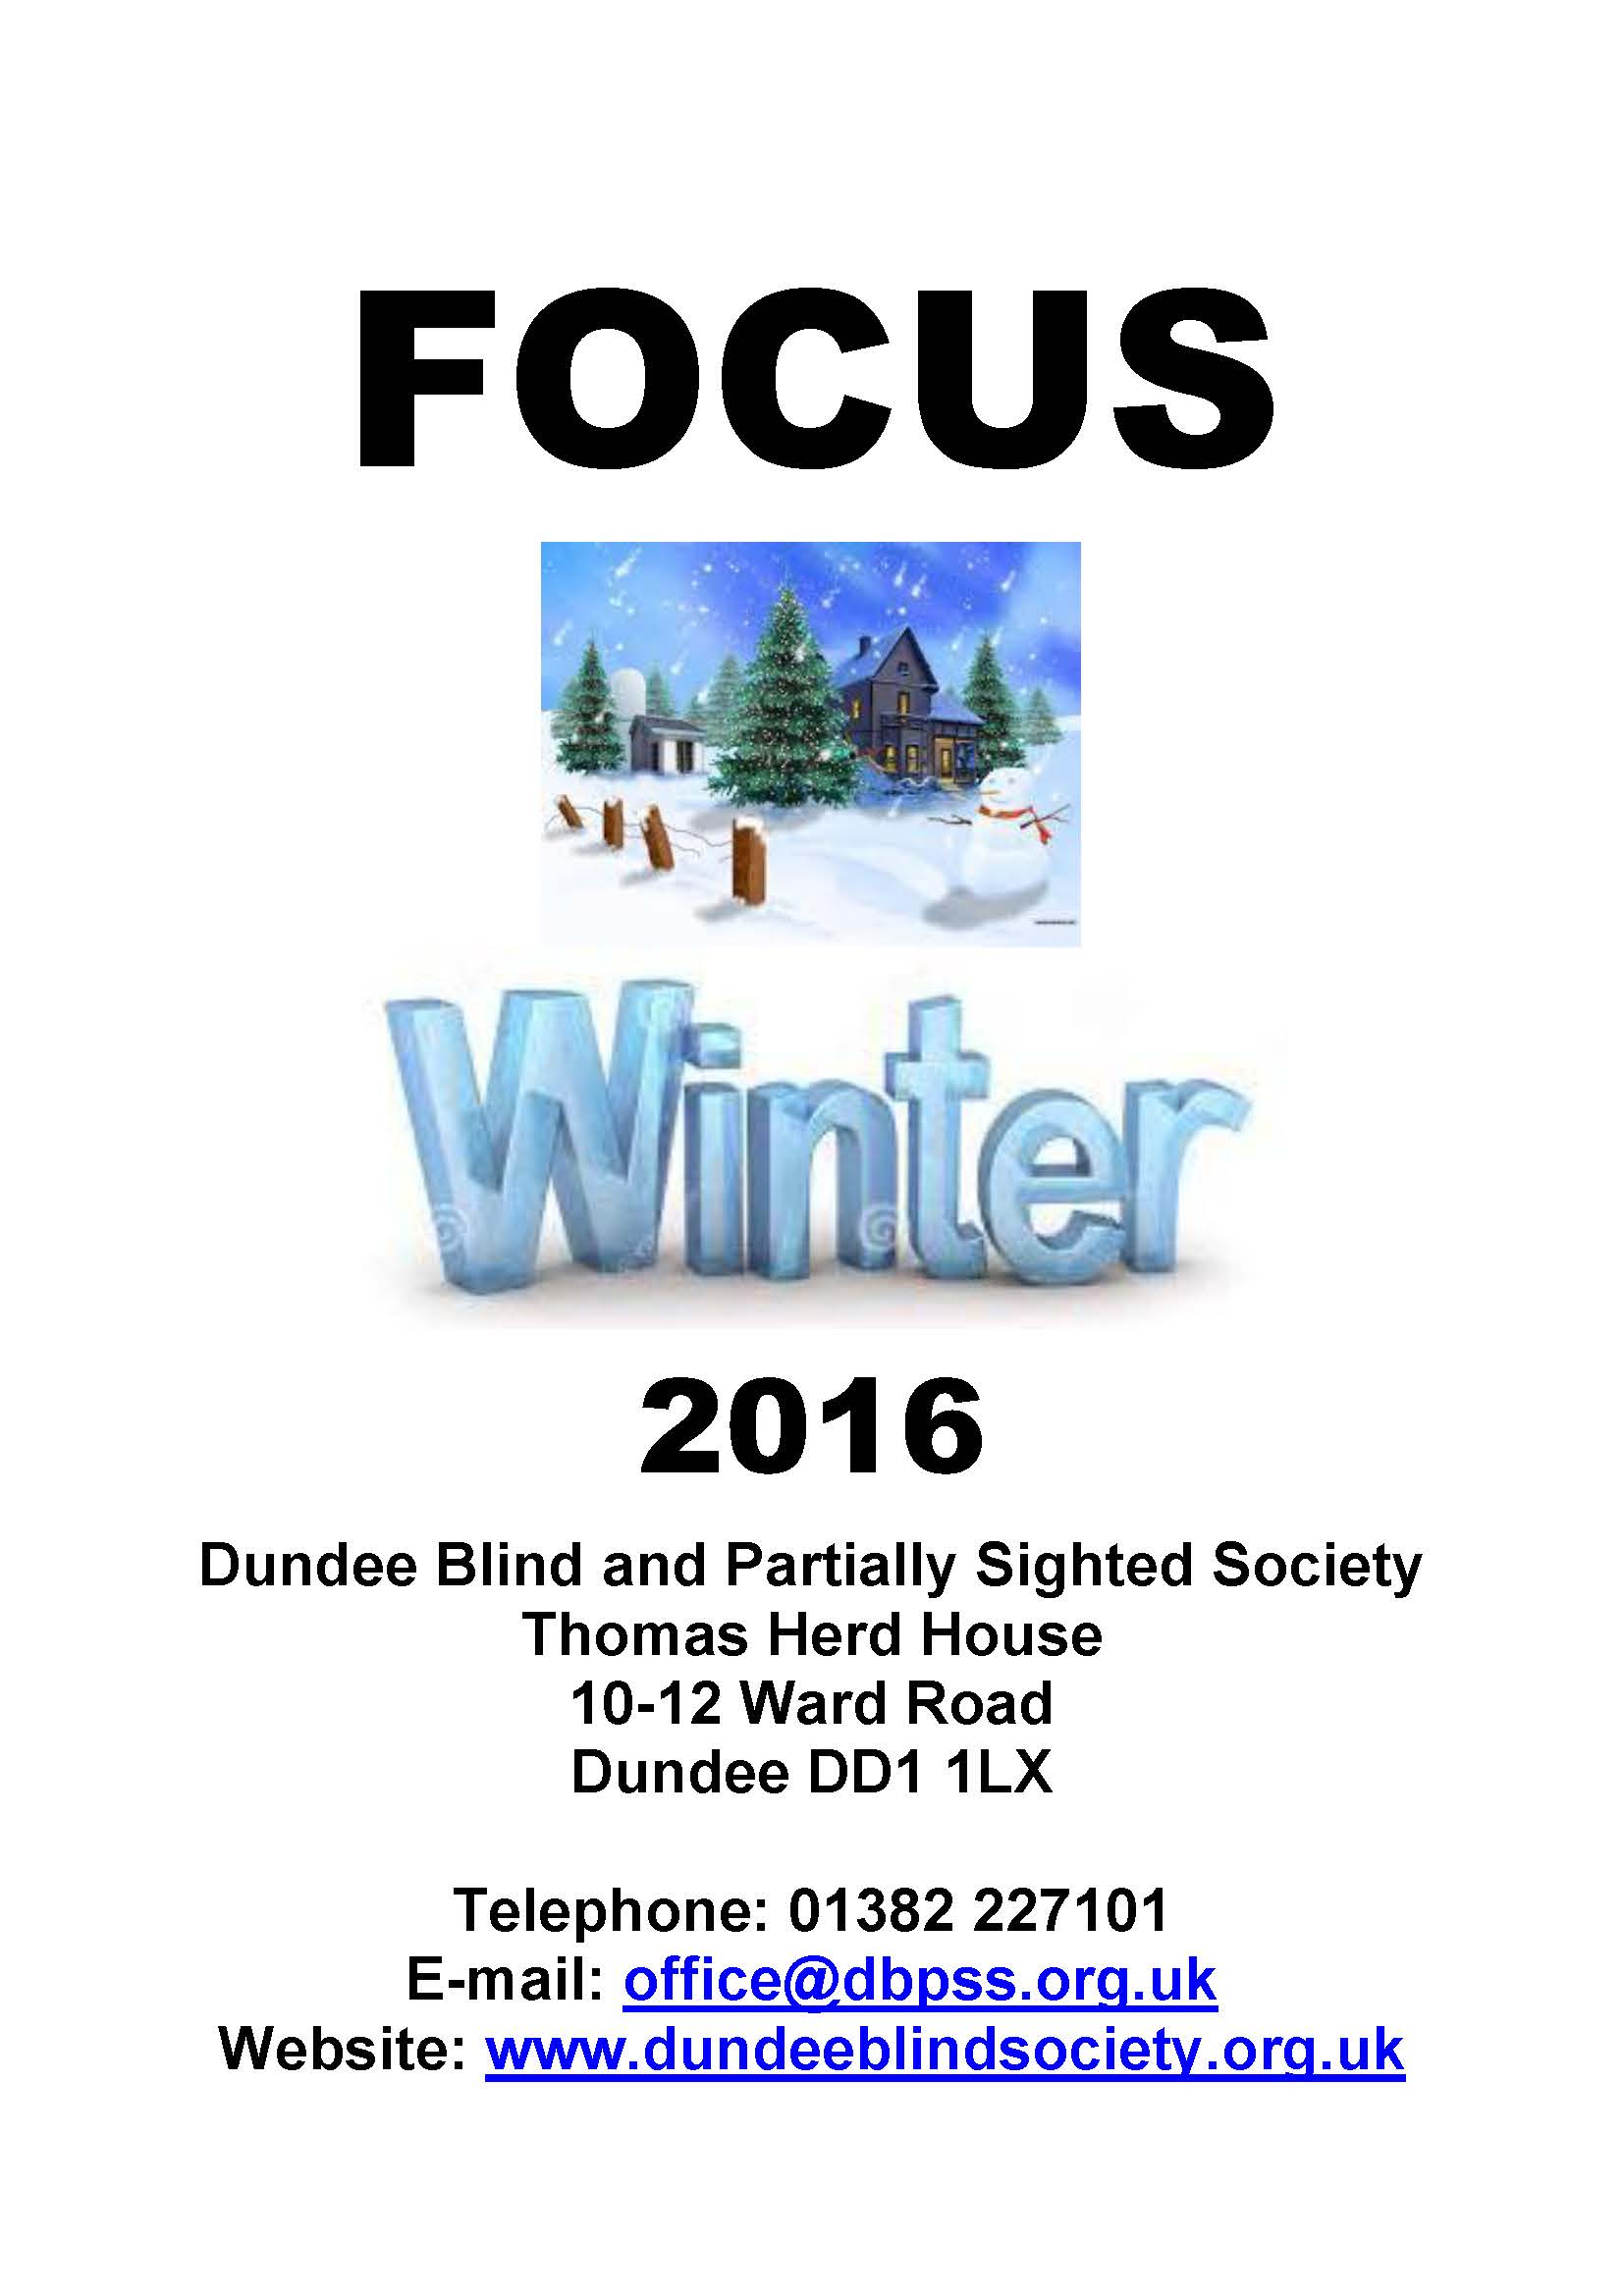 Winter 2016 Newsletter